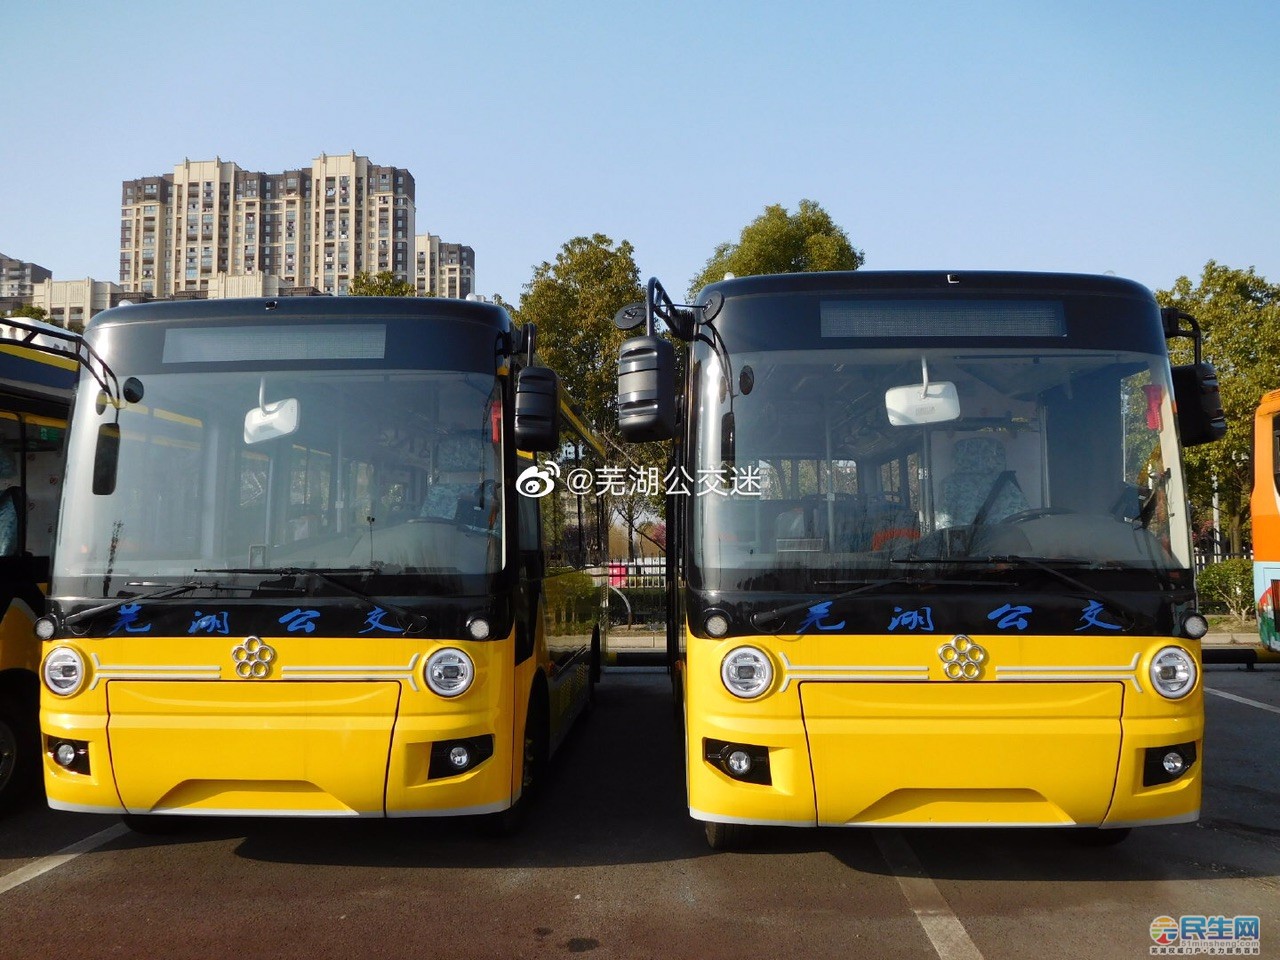 据说芜湖要换新的公交车了是不是真的有红黄两个颜色的